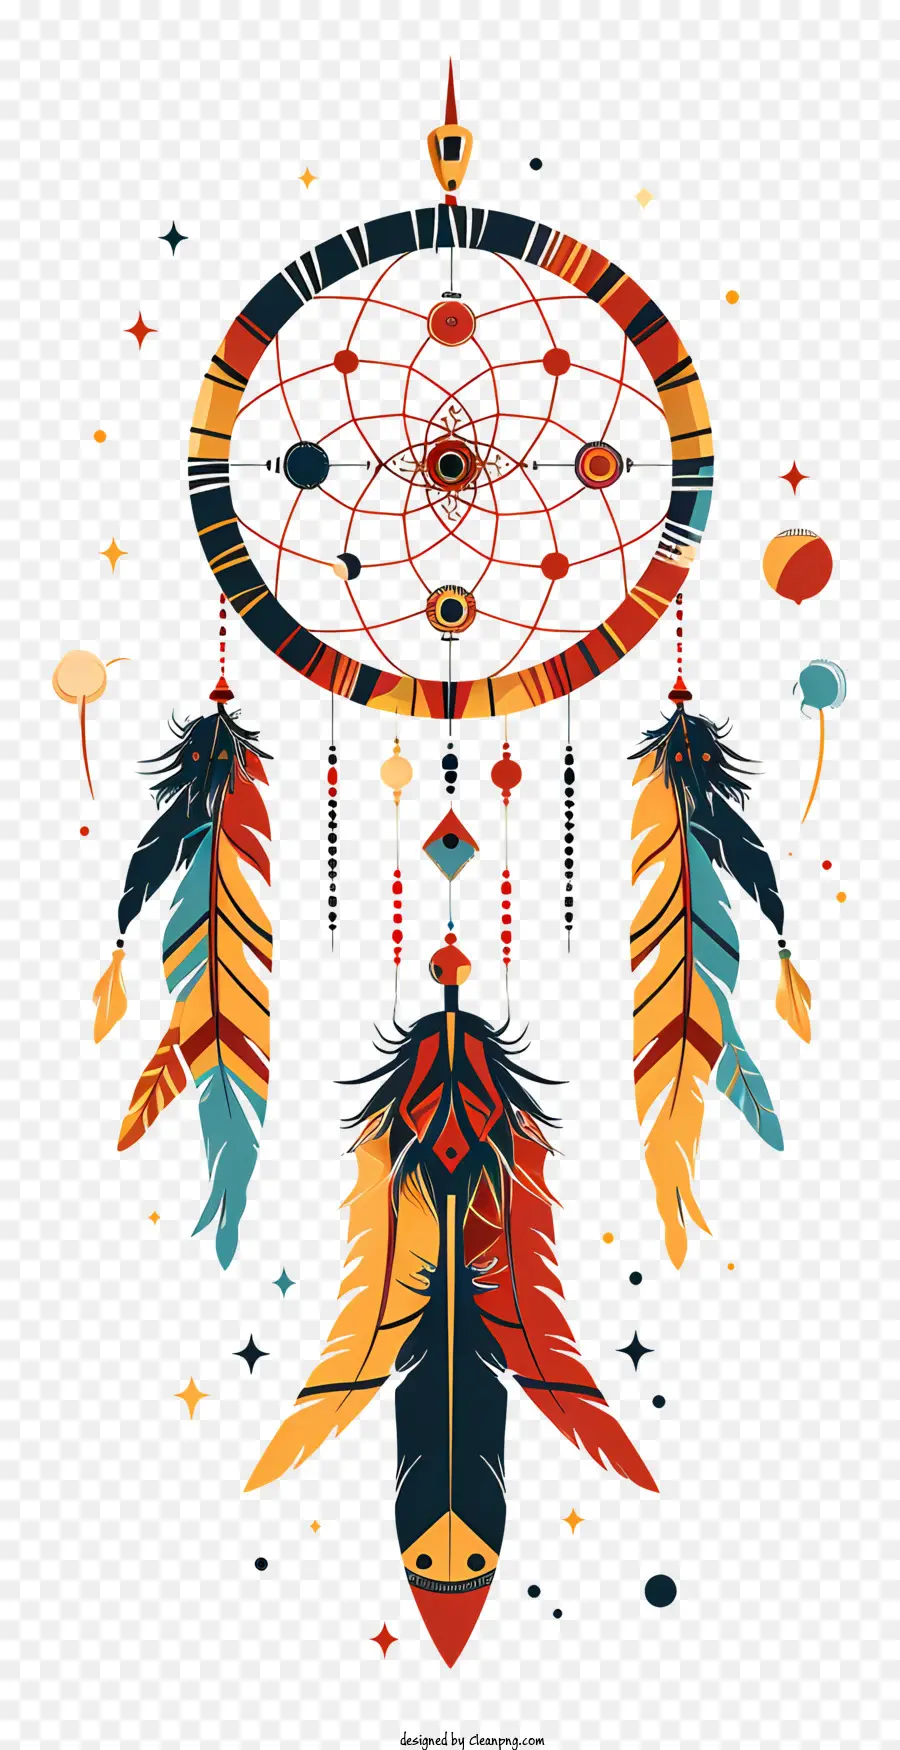 Traumfänger - Traumfänger der amerikanischen Ureinwohner mit farbenfrohen Design